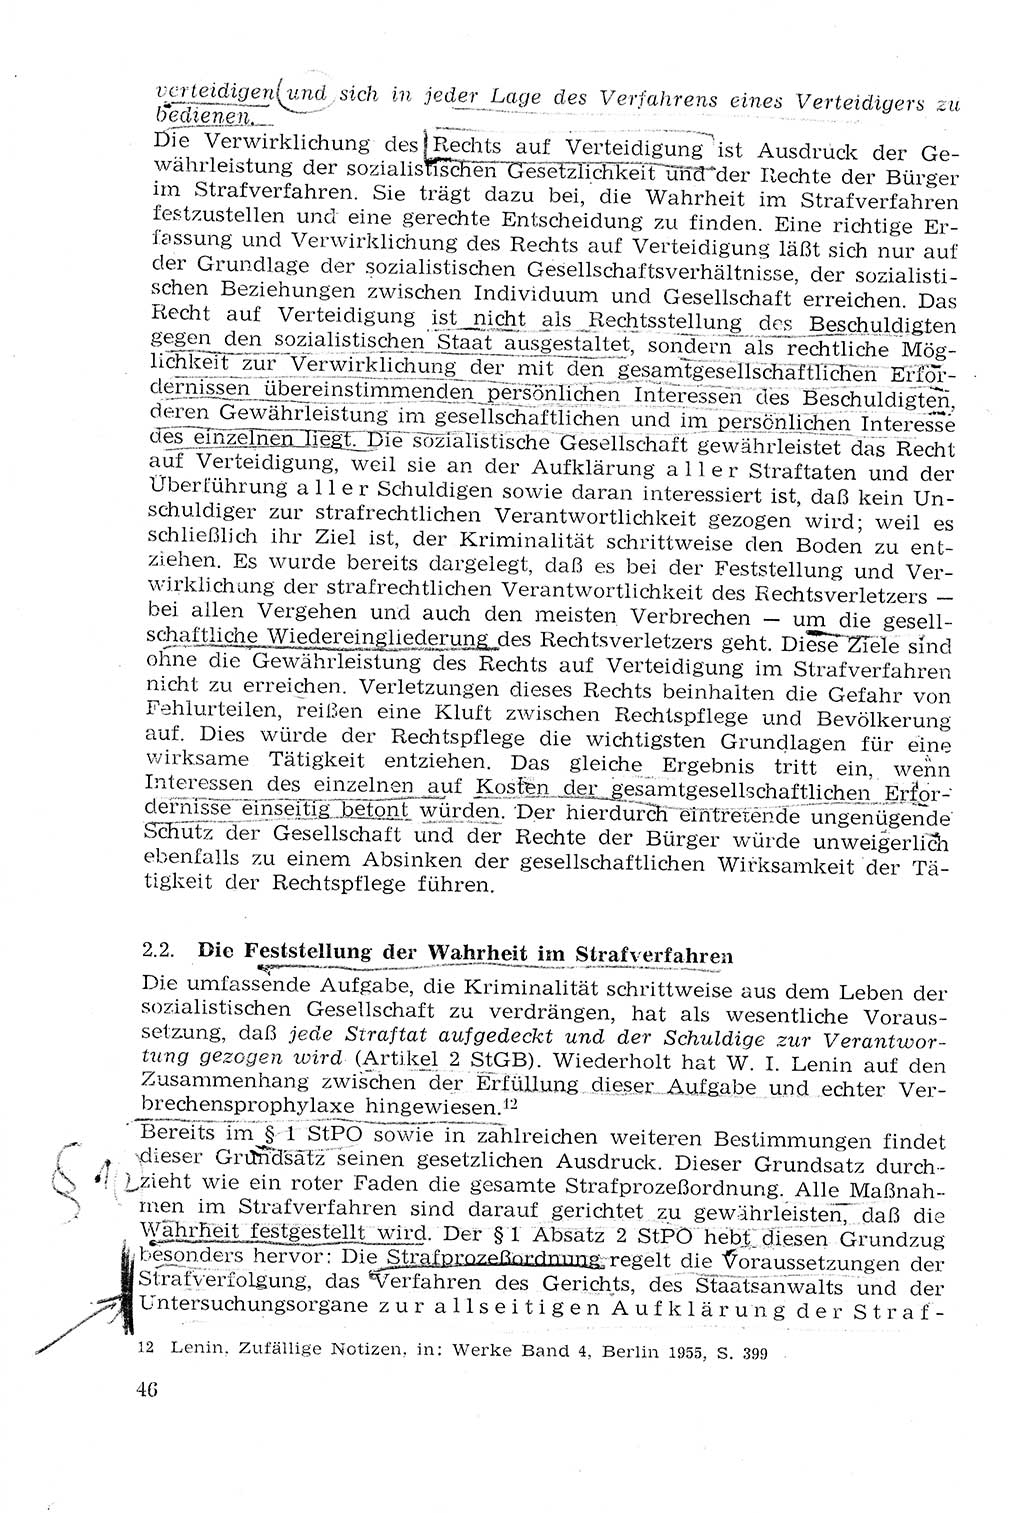 Strafprozeßrecht der DDR (Deutsche Demokratische Republik), Lehrmaterial 1969, Seite 46 (Strafprozeßr. DDR Lehrmat. 1969, S. 46)